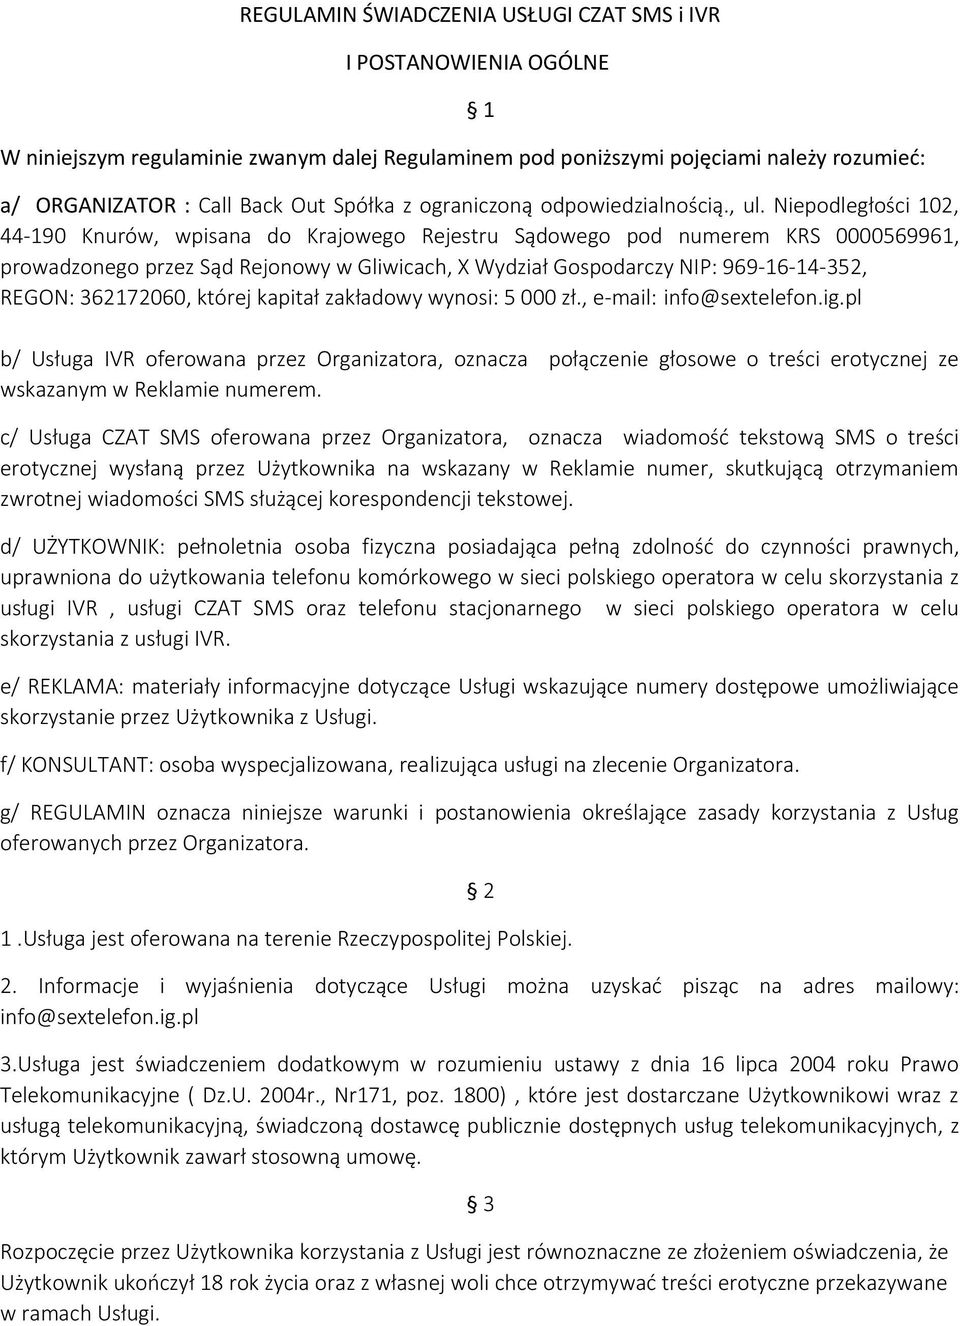 Niepodległości 102, 44-190 Knurów, wpisana do Krajowego Rejestru Sądowego pod numerem KRS 0000569961, prowadzonego przez Sąd Rejonowy w Gliwicach, X Wydział Gospodarczy NIP: 969-16-14-352, REGON: